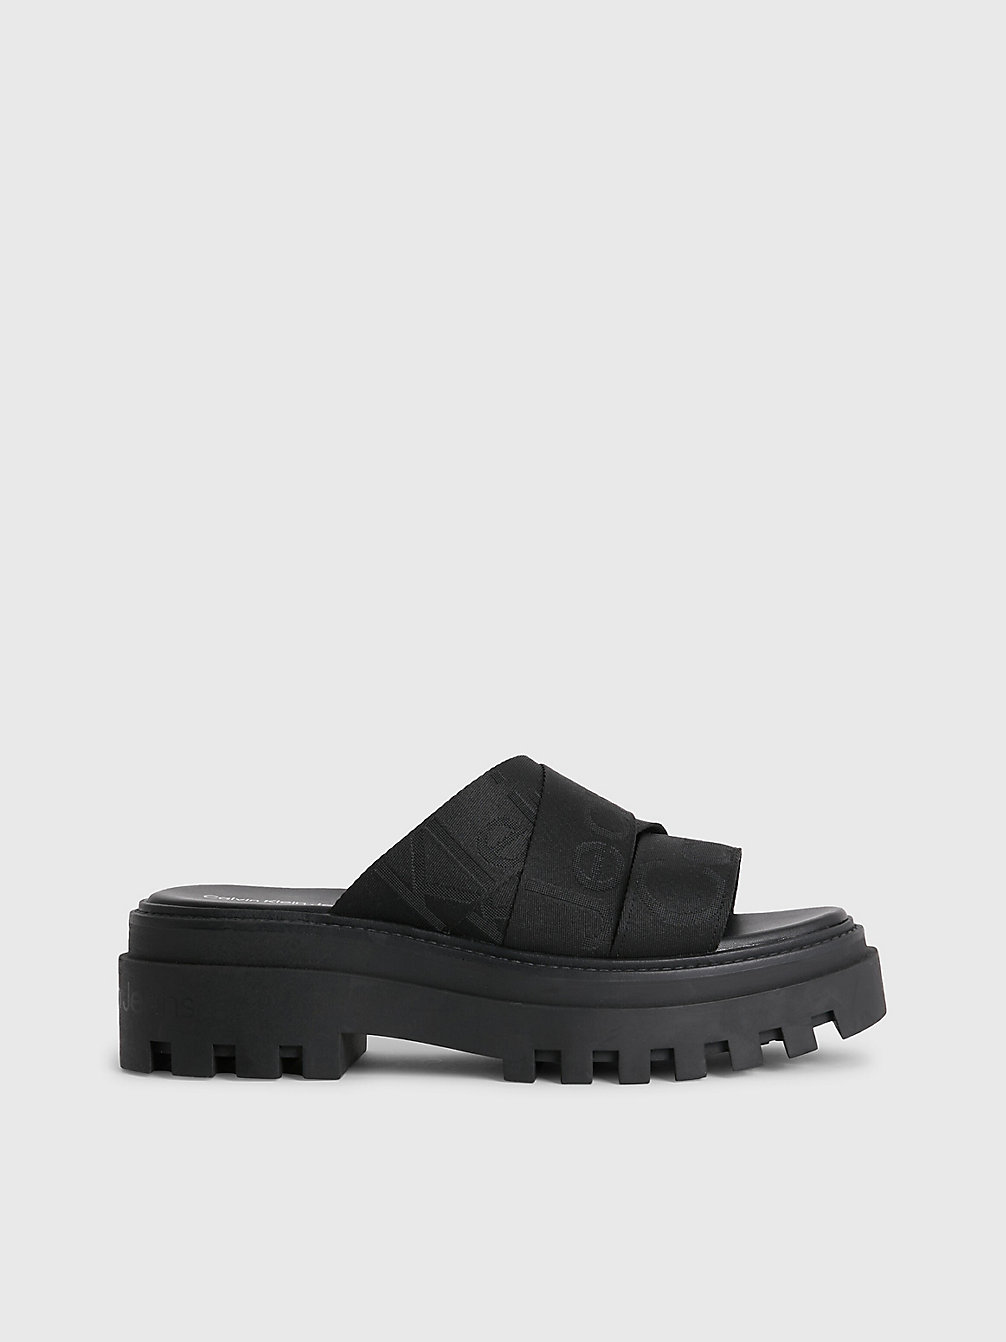 BLACK Recycled Platform Wedge Logo Sandals undefined women Calvin Klein